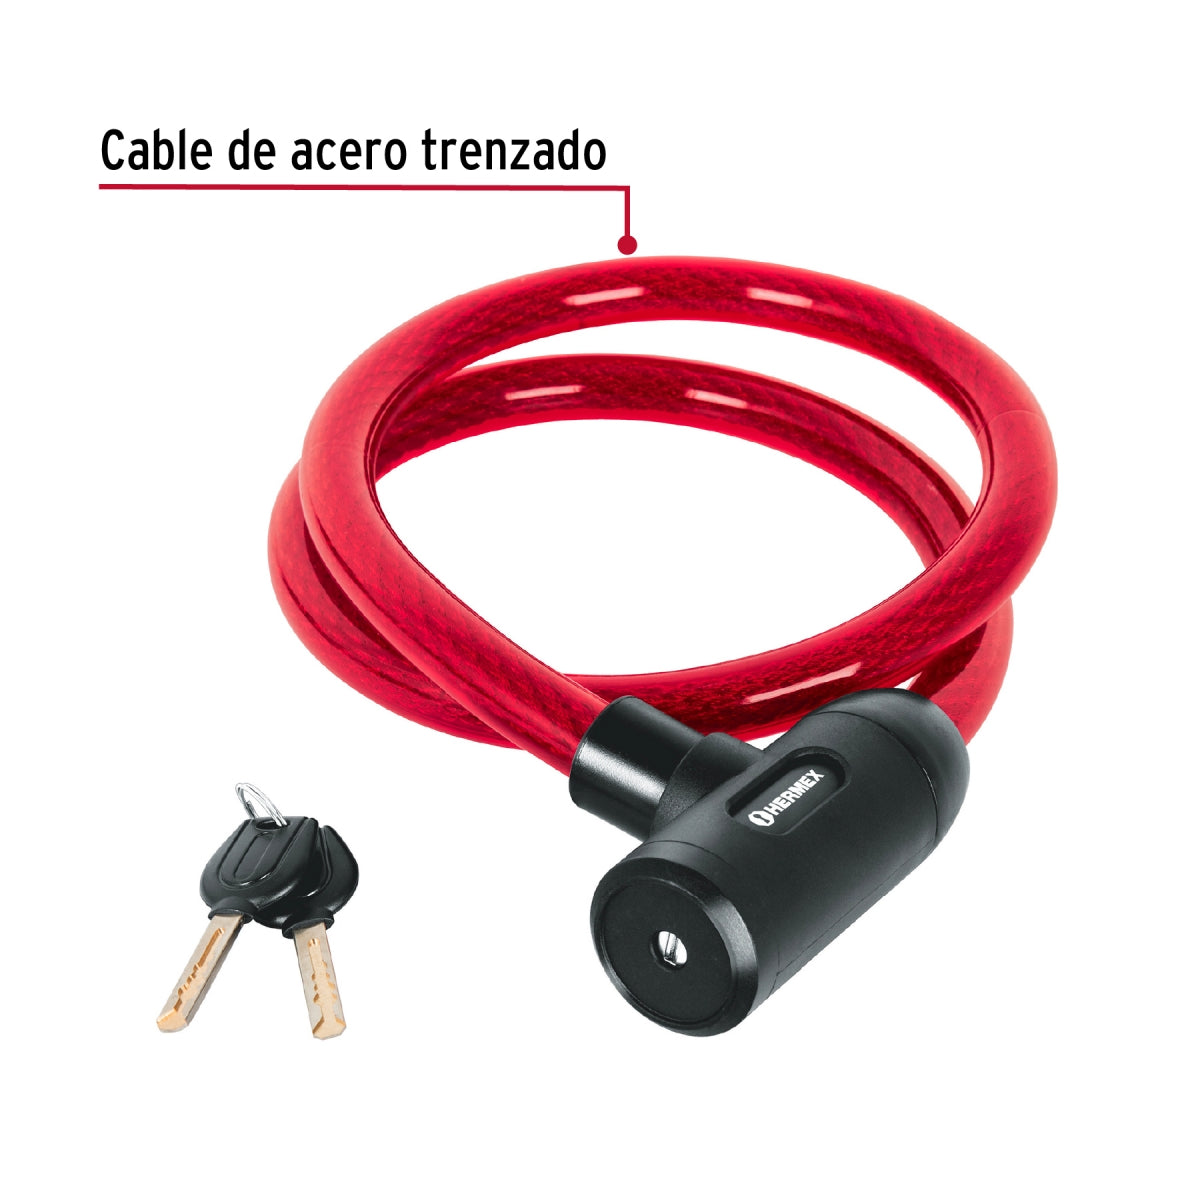 Candado de cable con llave 20mm x 1.20m SKU:'43921